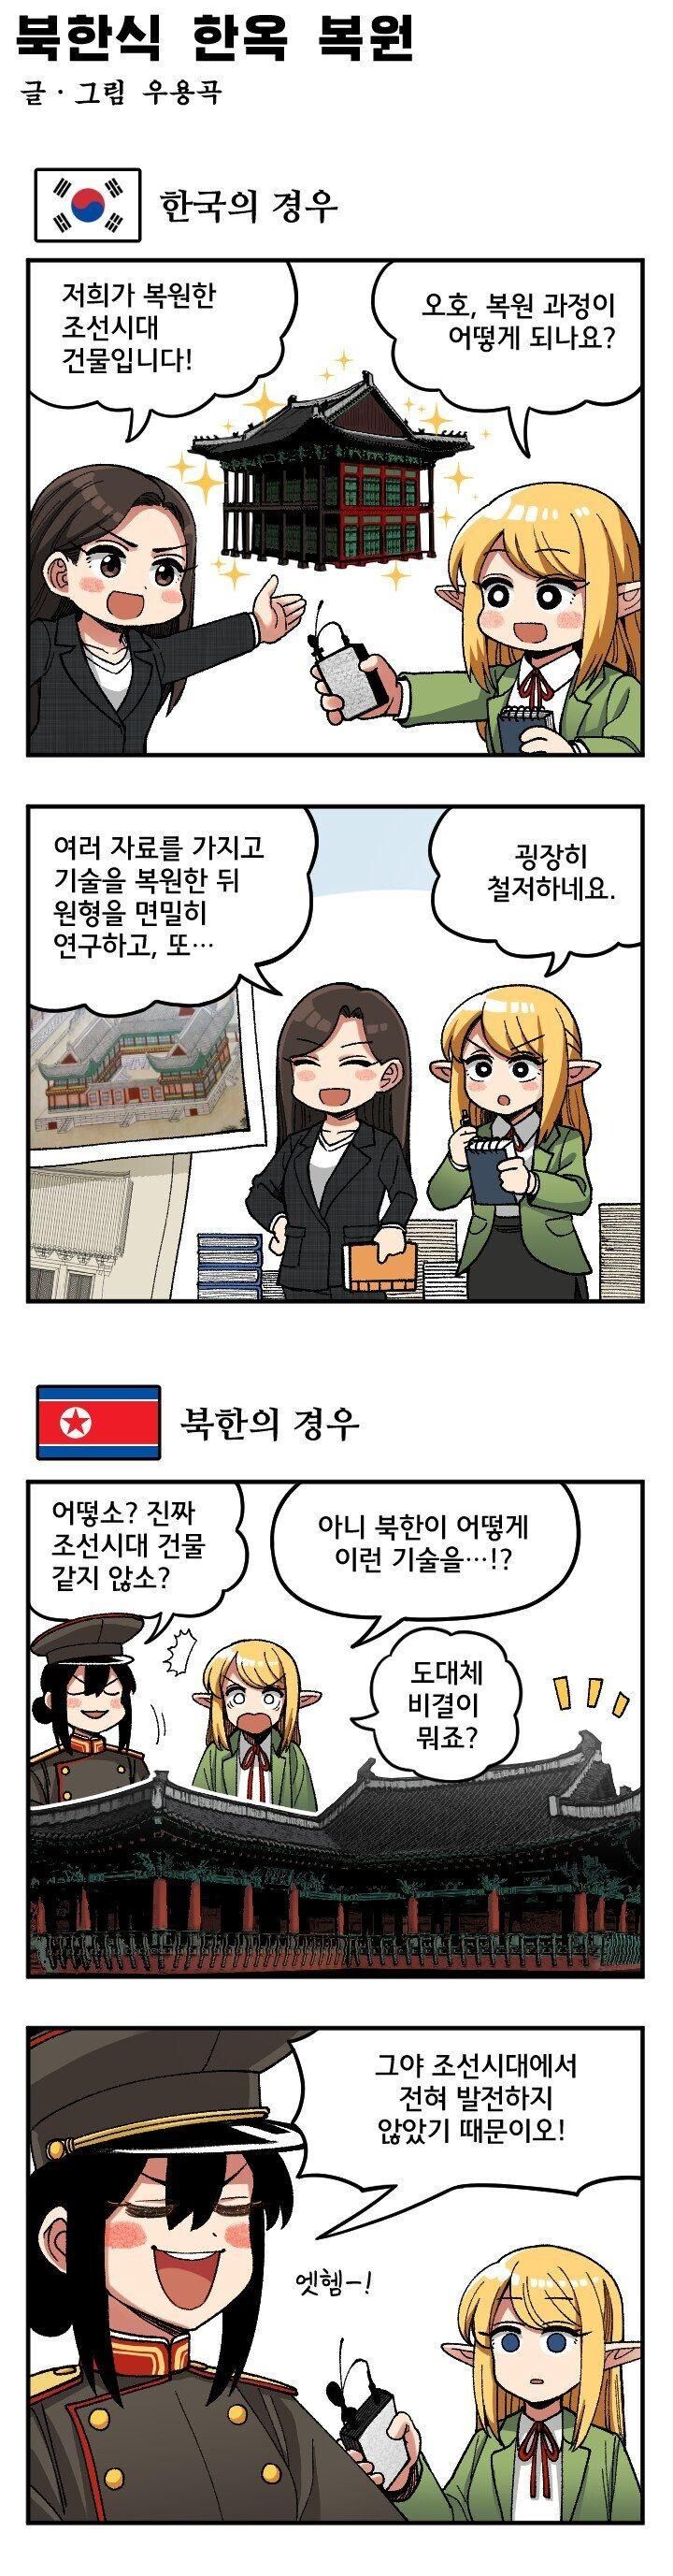 한국과 북한의 복원차이